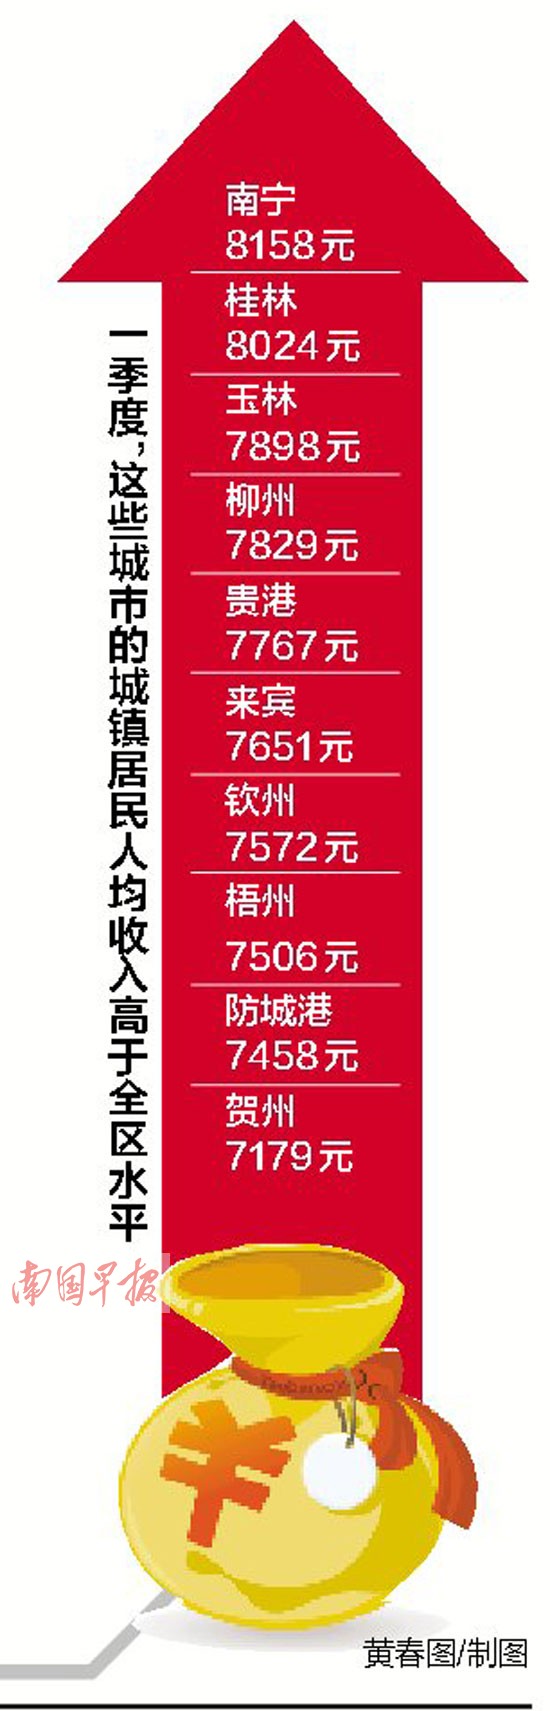 广西城镇居民人均工资性收入为4061元